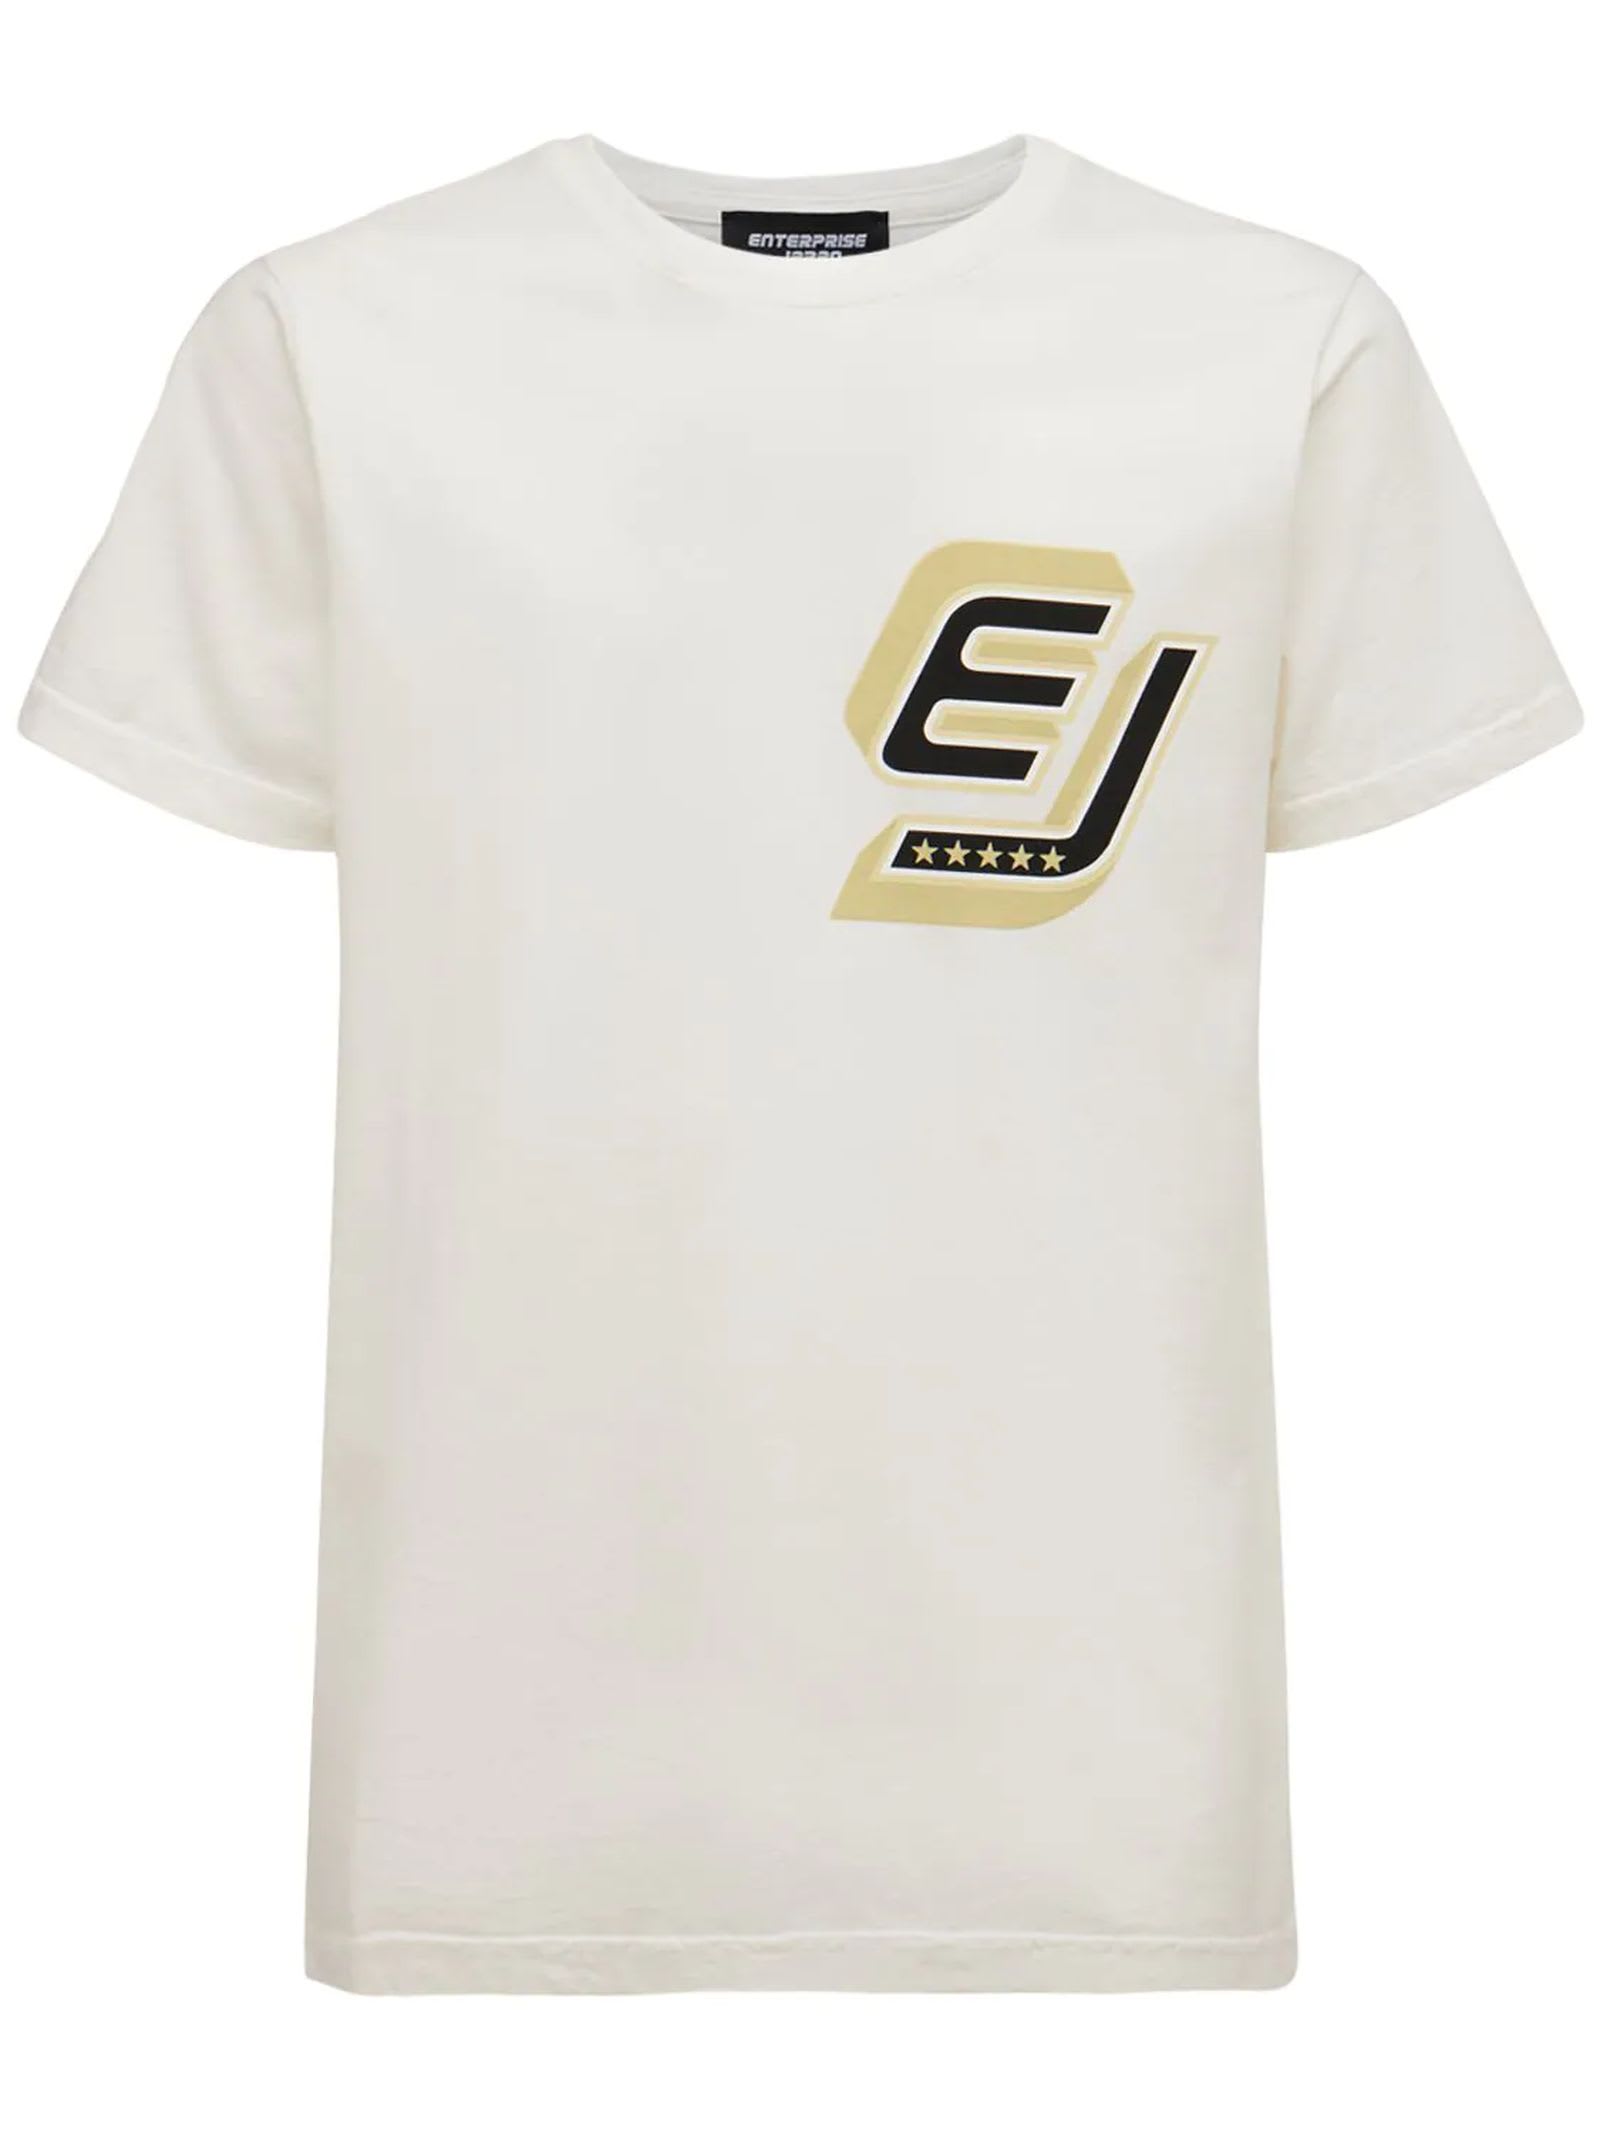 Enterprise Japan Cream Cotton T-shirt